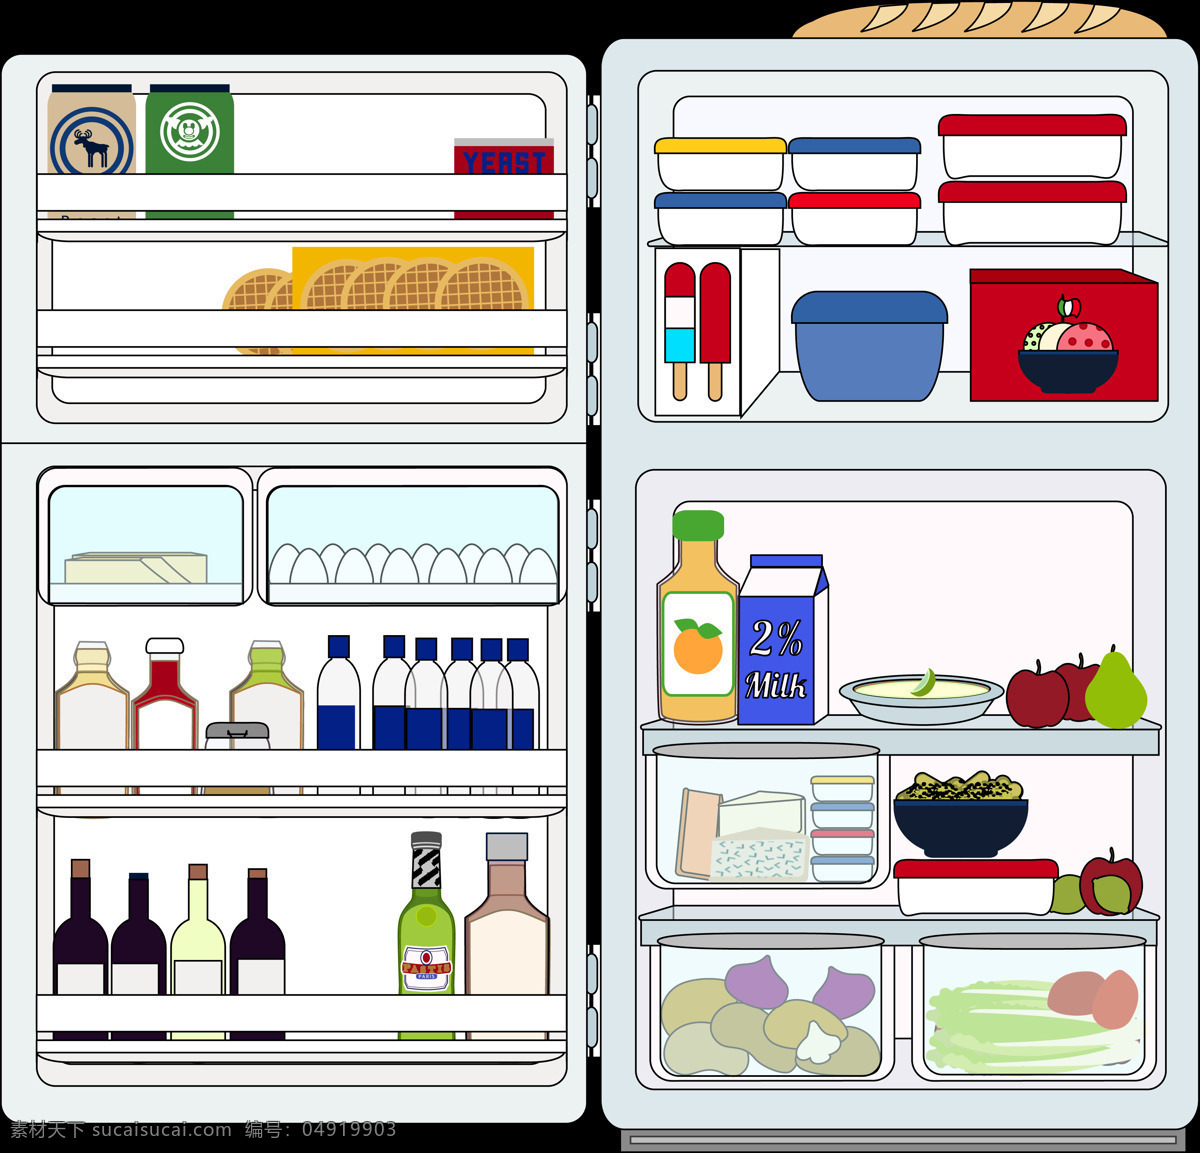 冰箱 制冷 冻结 每加仑 牛奶 架子 蔬菜 冷库 厨房 冰柜 食品 冷柜 家用电器 电 冷藏 厨房电器 现代科技